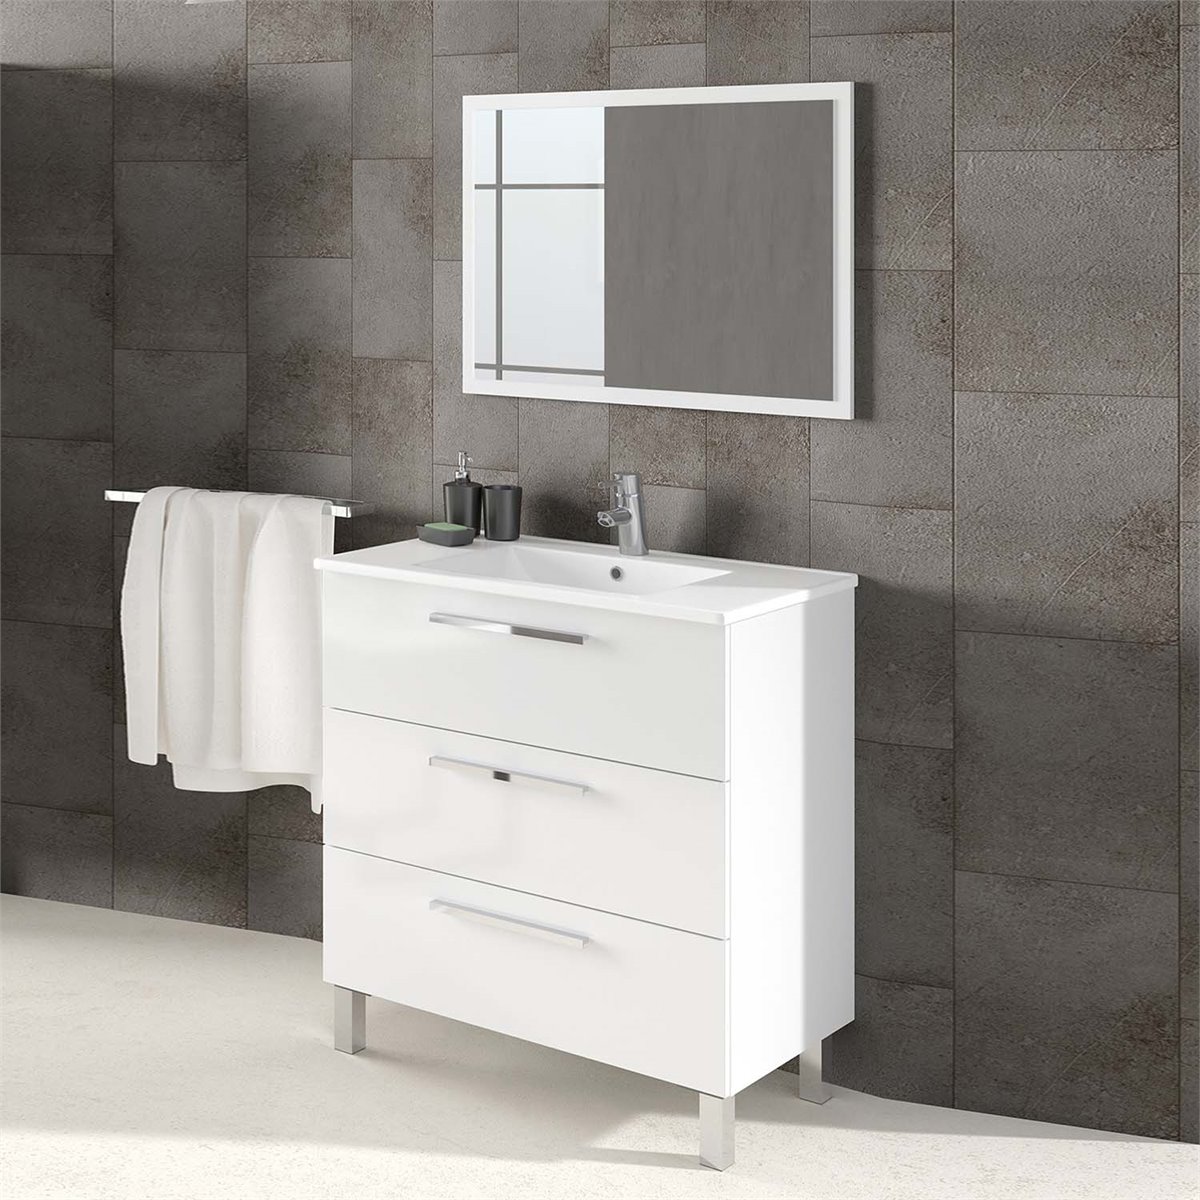 Mueble baño Alise 3 cajones espejo, sin lavabo, Blanco brillo - Conforama